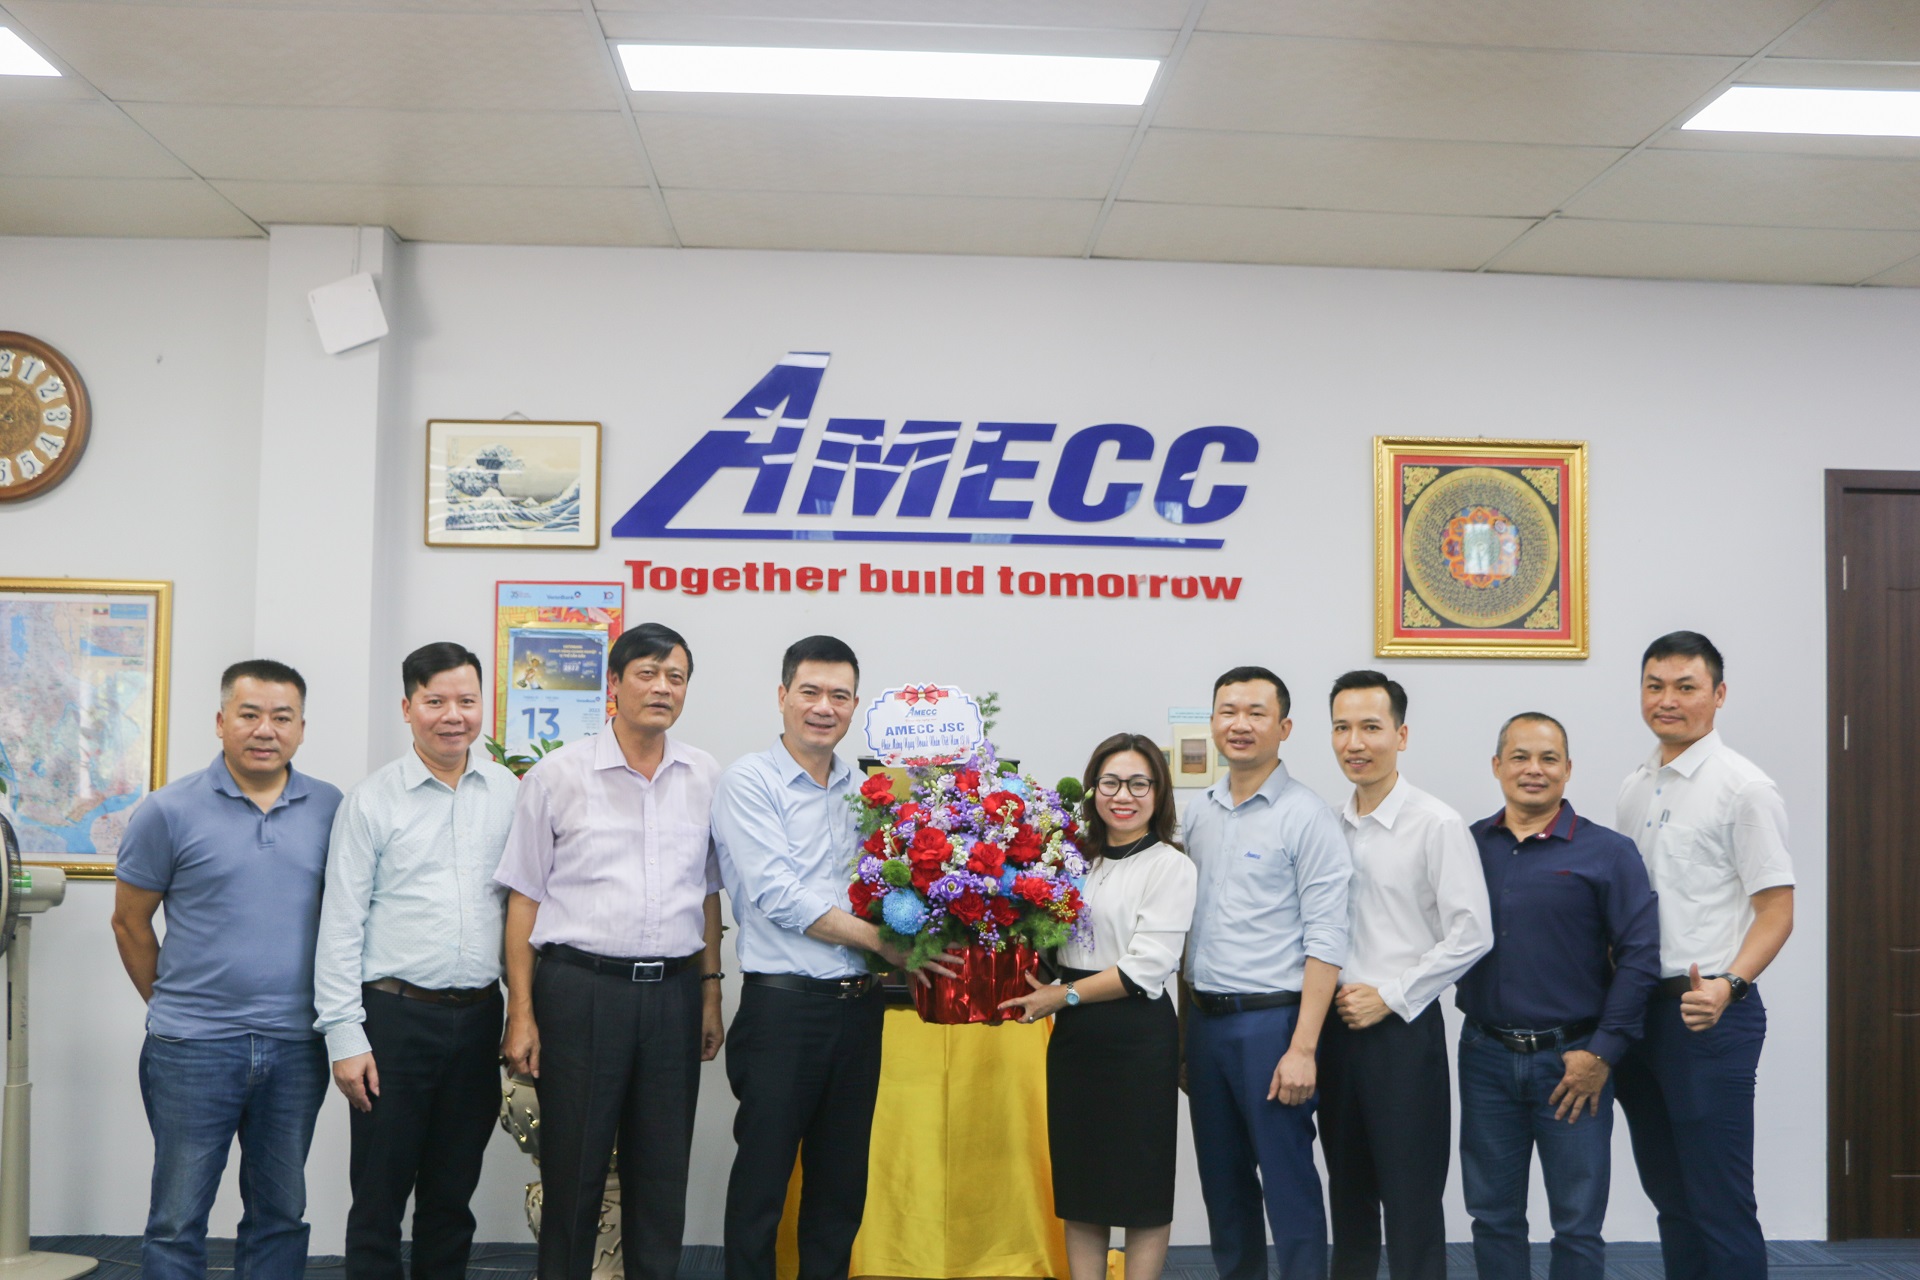 Chúc mừng Ngày doanh nhân Việt Nam 13/10/2023: Amecc vươn mình trên con đường phát triển bền vững